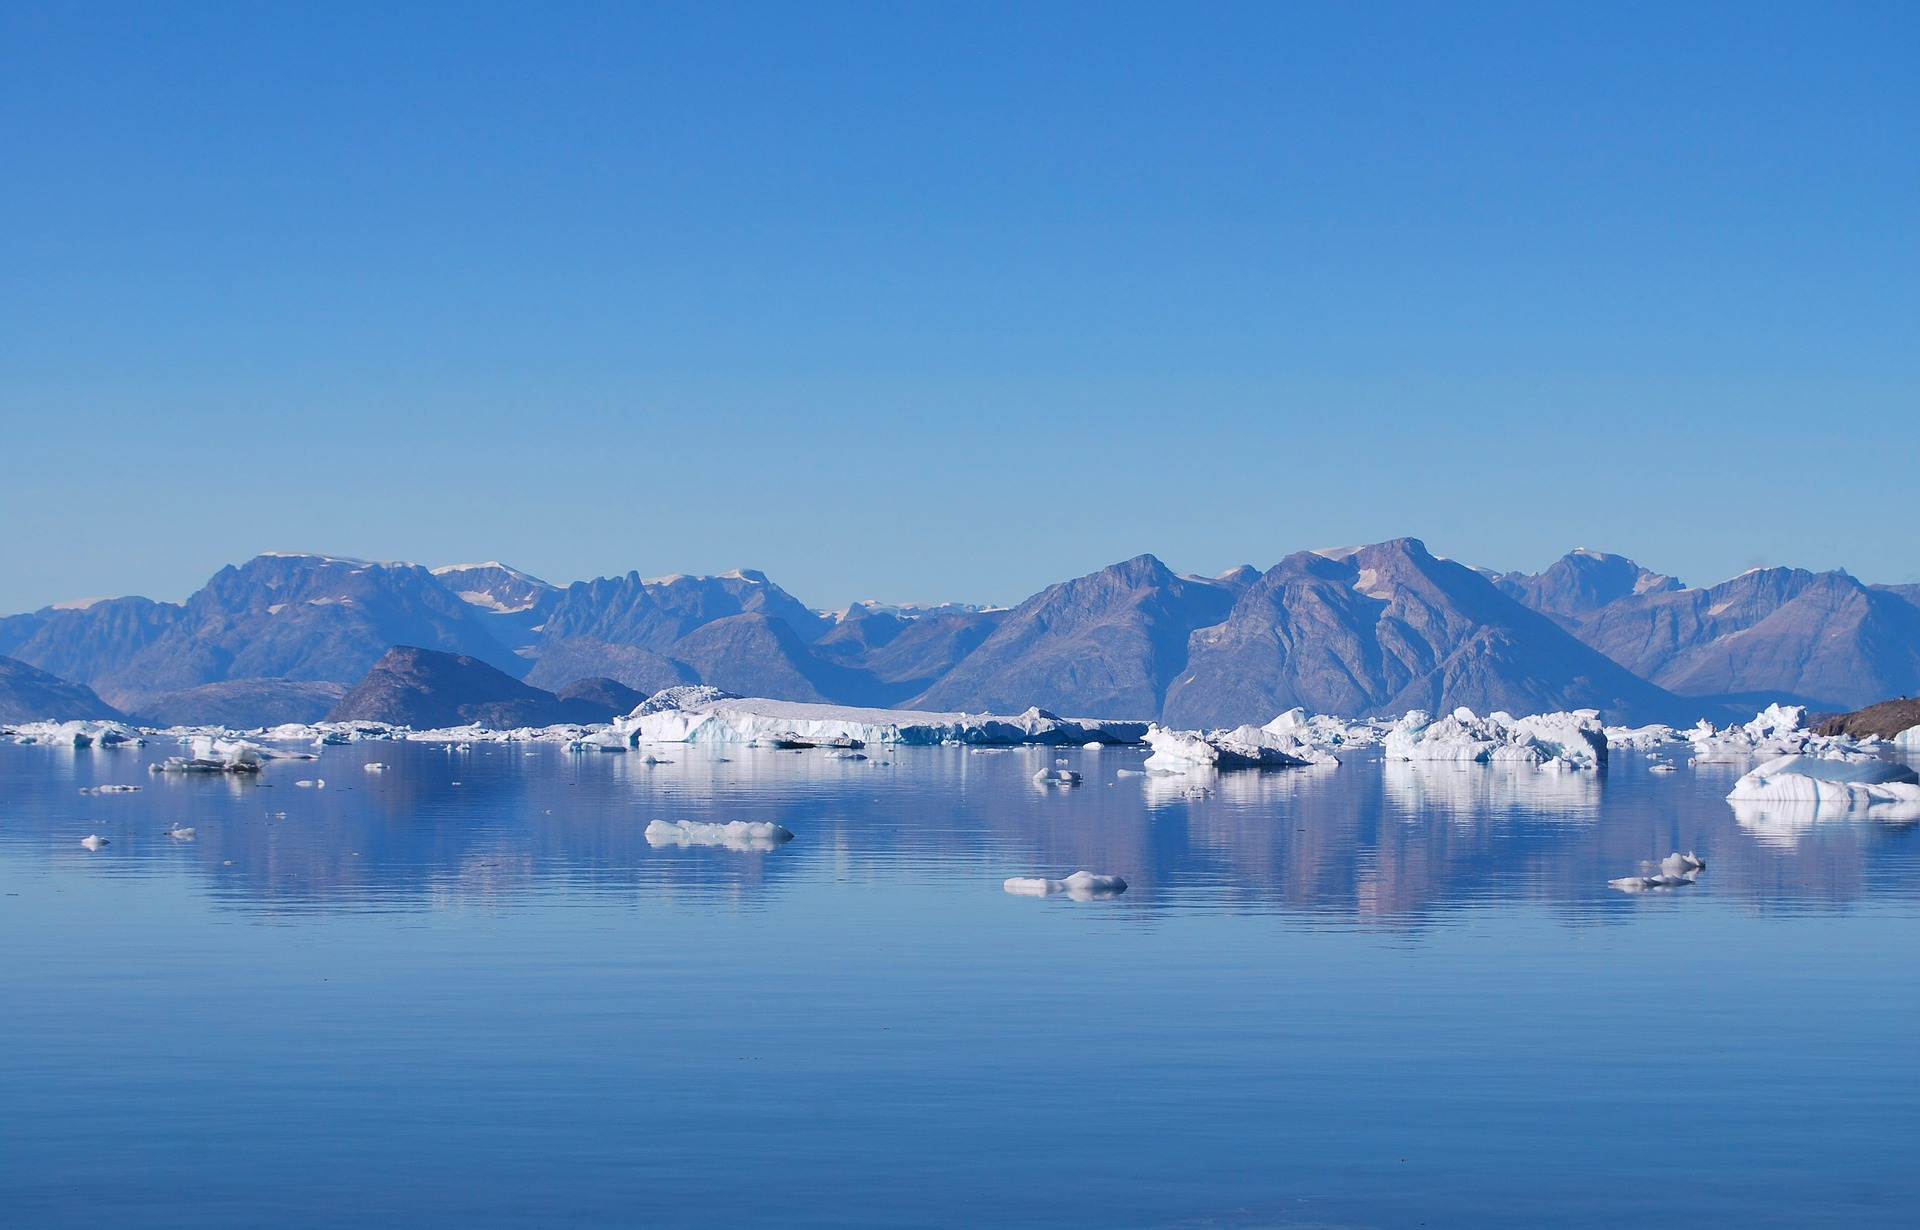 Арктика за неделю: «Арктические рубежи», наша стратегия и новые льготы